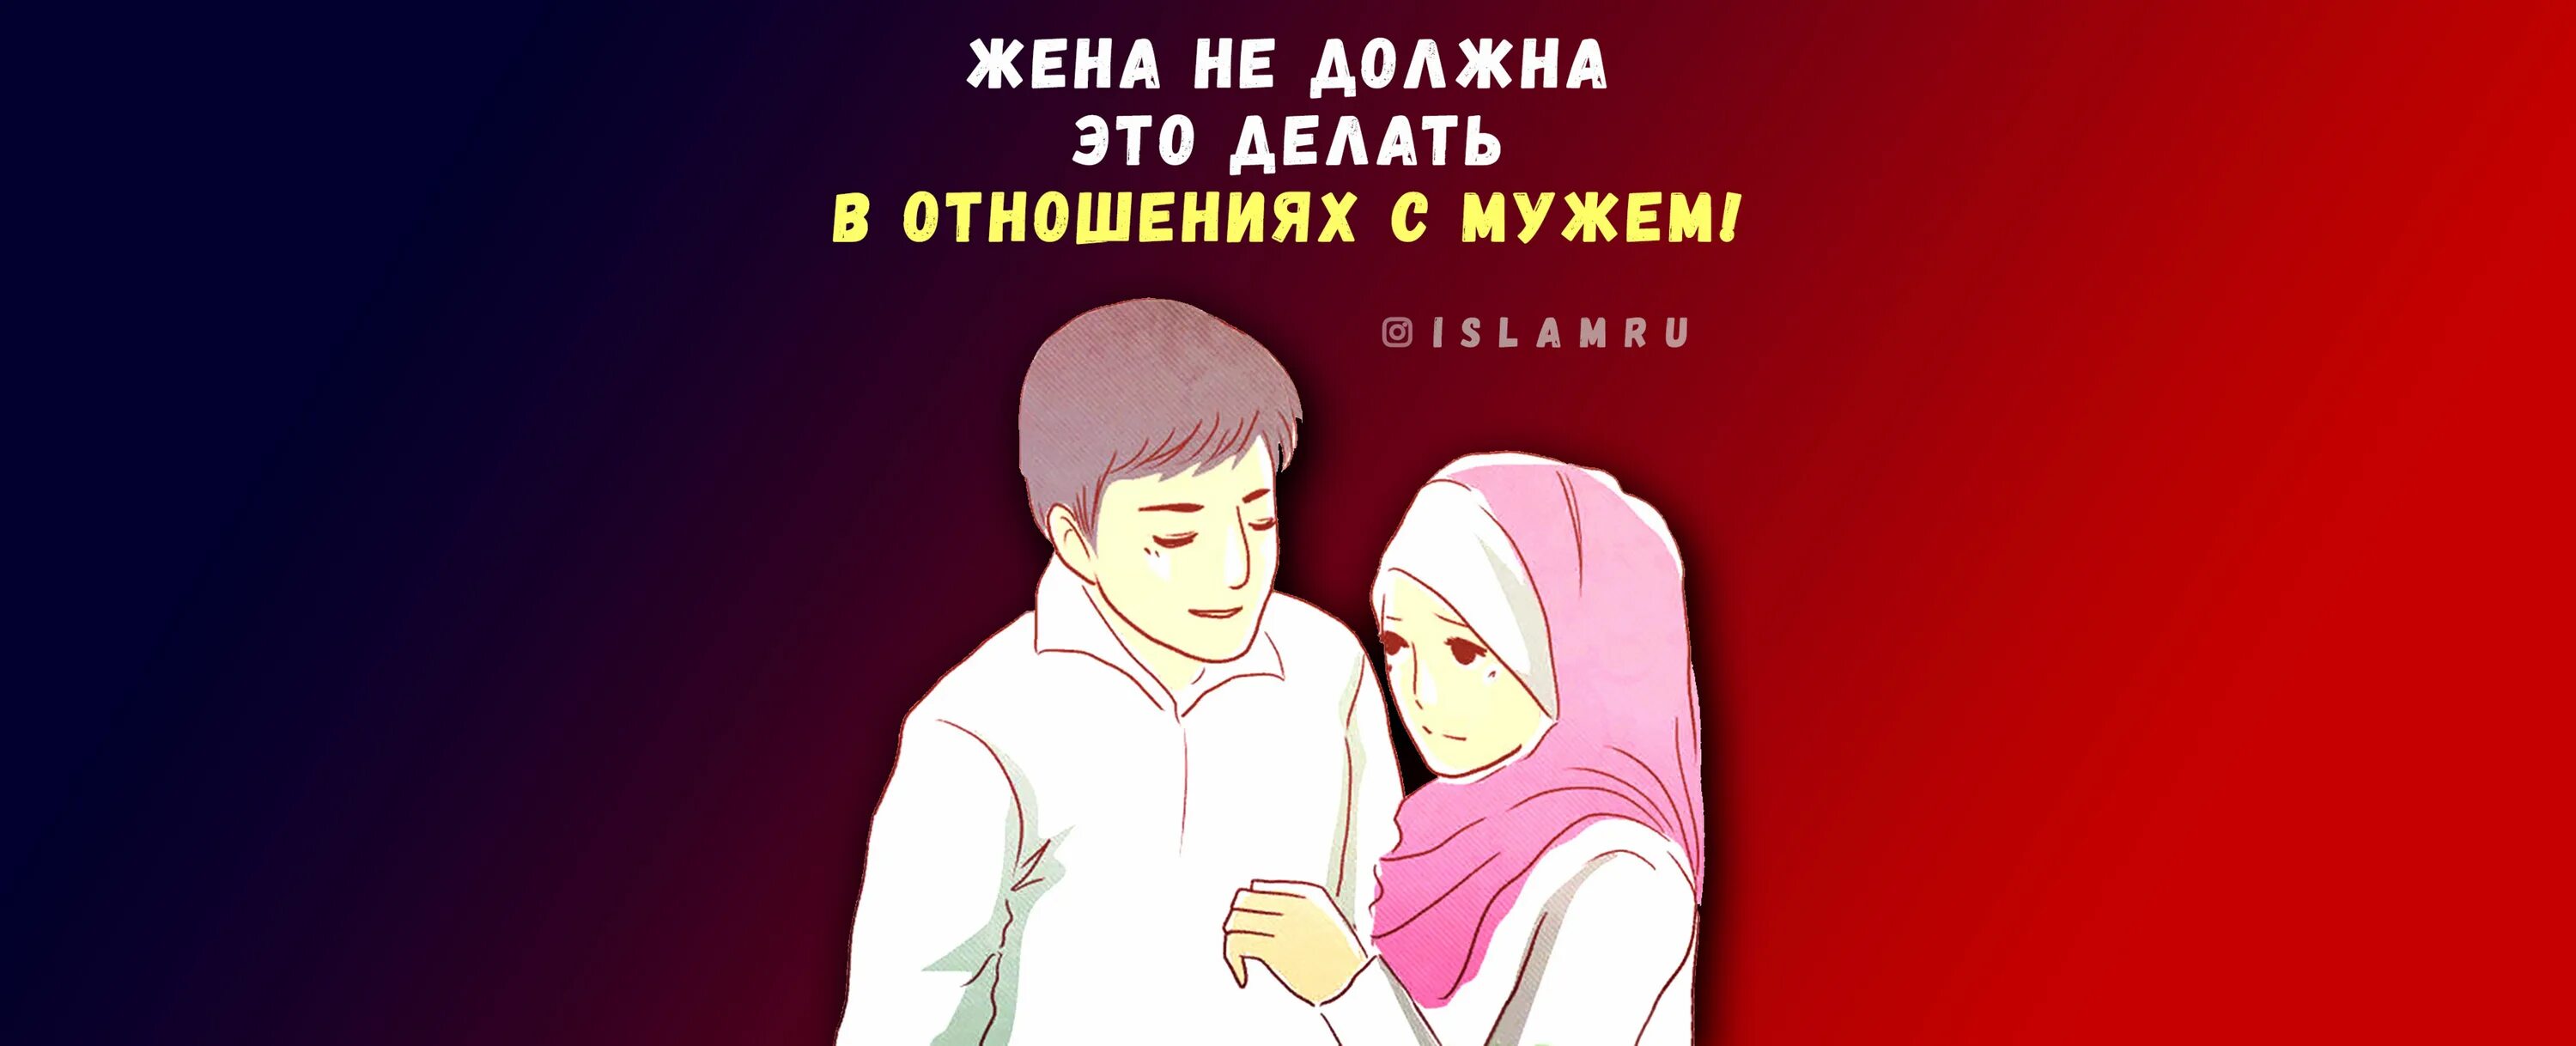 Жена отказывает мужу исламе. Покорность мужу в Исламе. Любовь мужа и жены в Исламе. Непослушание жены мужу в Исламе. Верная жена в Исламе.